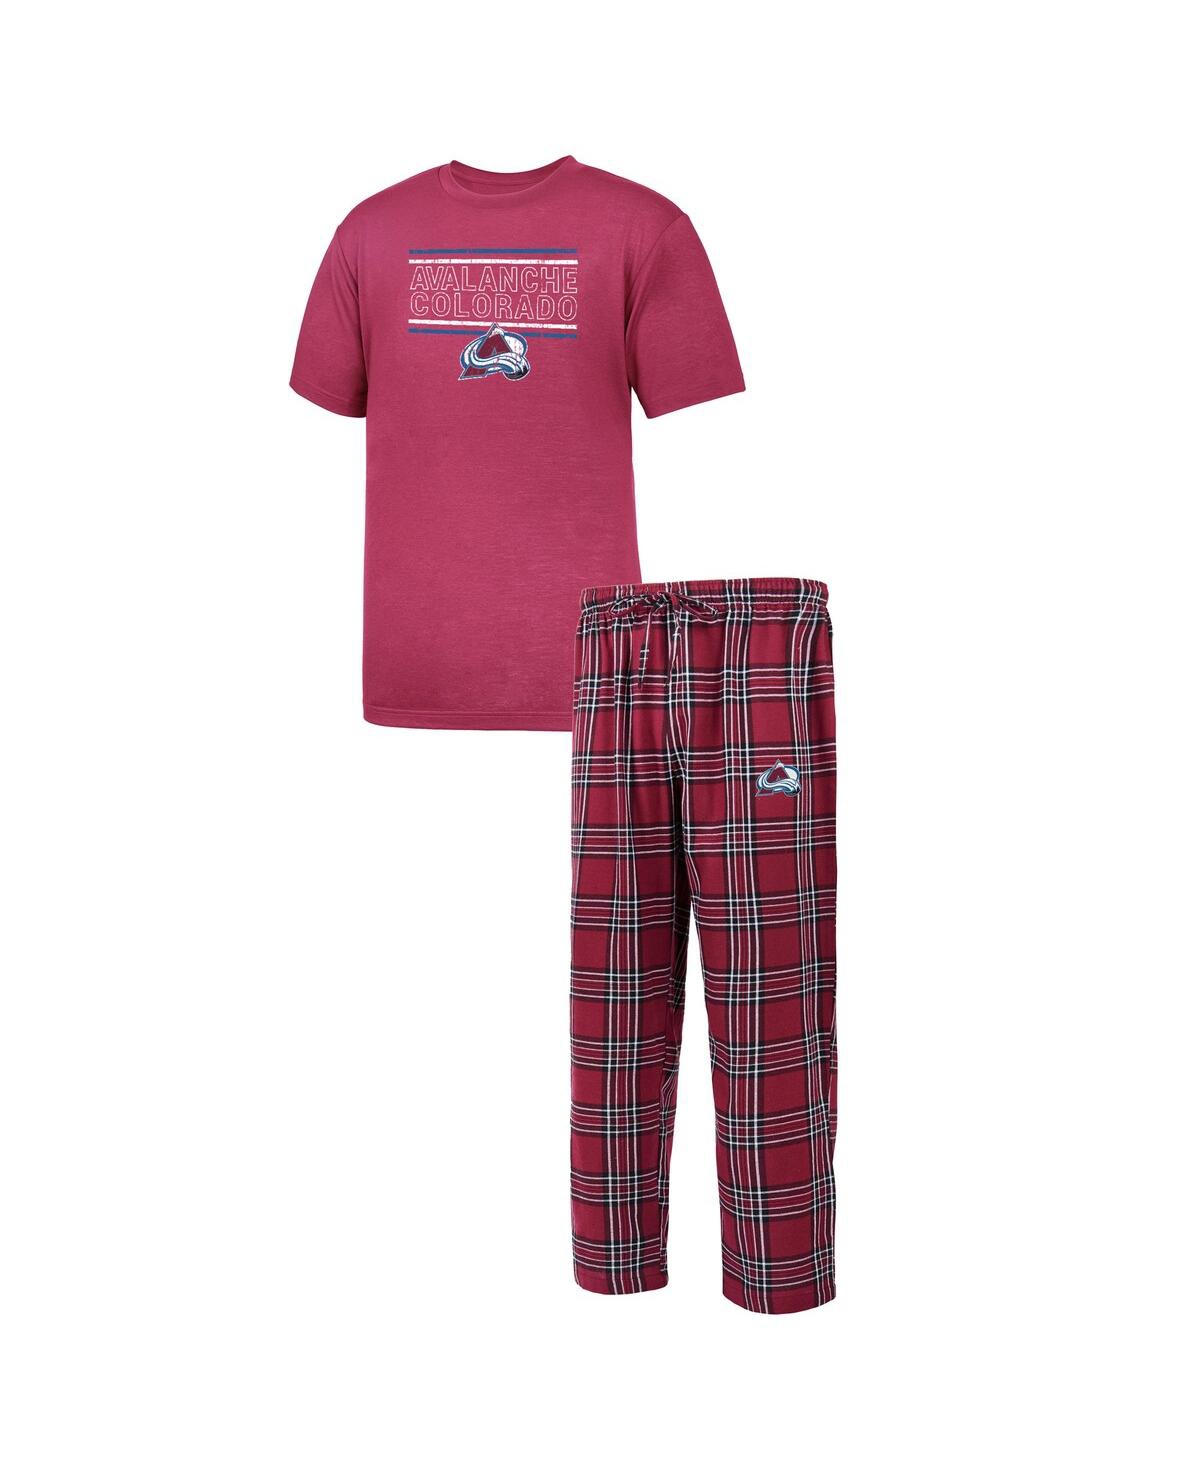 Men's Burgundy Colorado Avalanche Big and Tall T-shirt and Pajama Pants Sleep Set - Burgundy